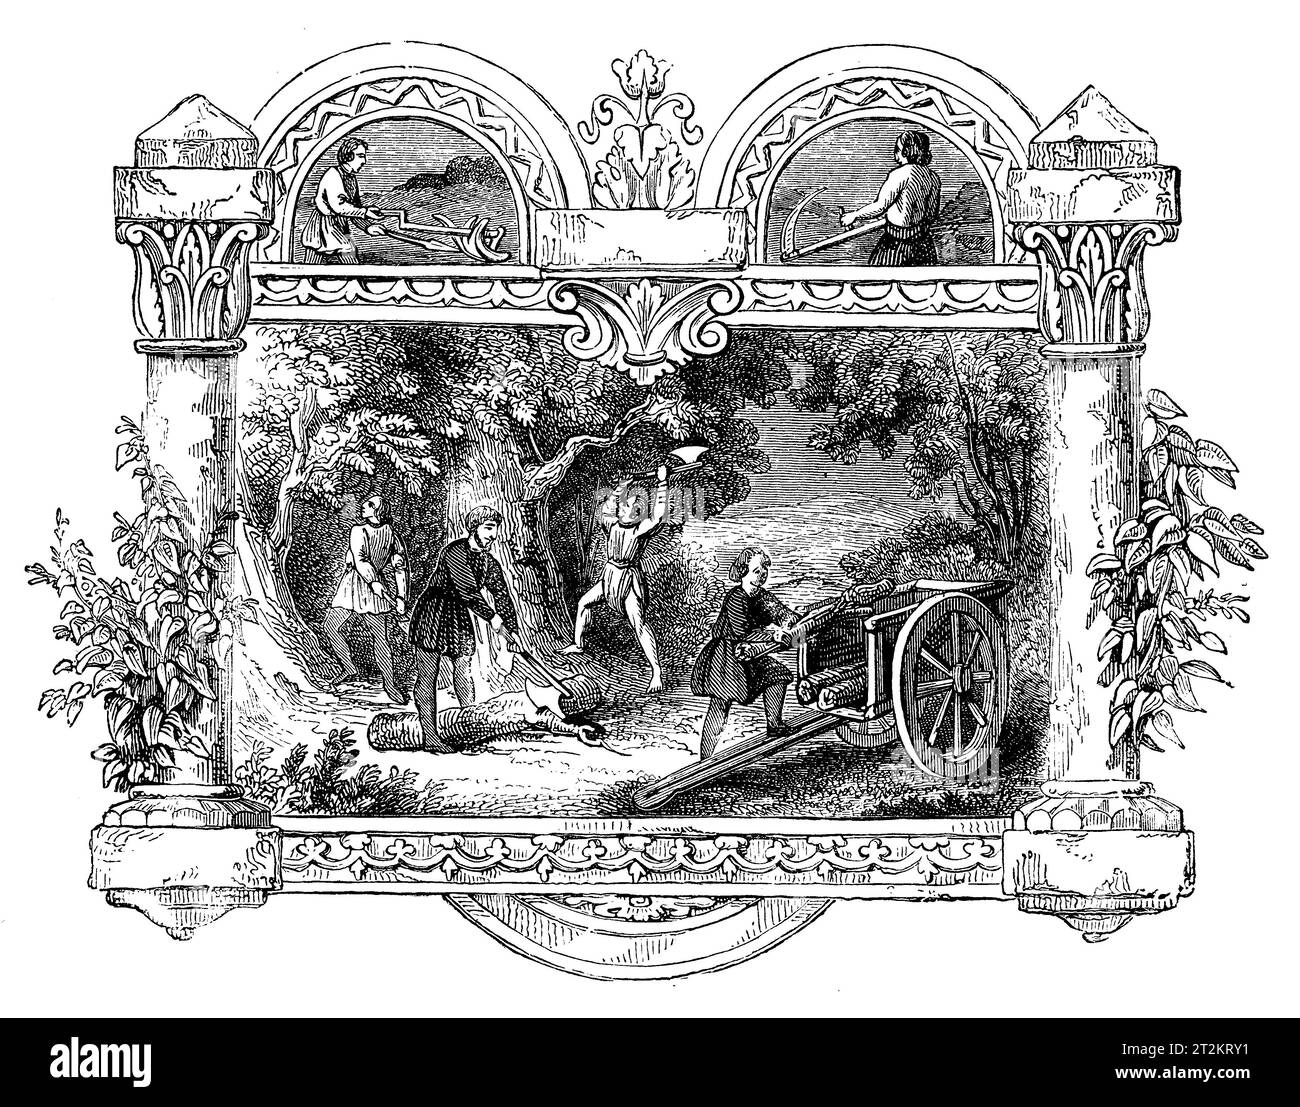 Emblemas sajones del mes de junio. Ilustración en blanco y negro de la 'Vieja Inglaterra' publicada por James Sangster en 1860. Foto de stock